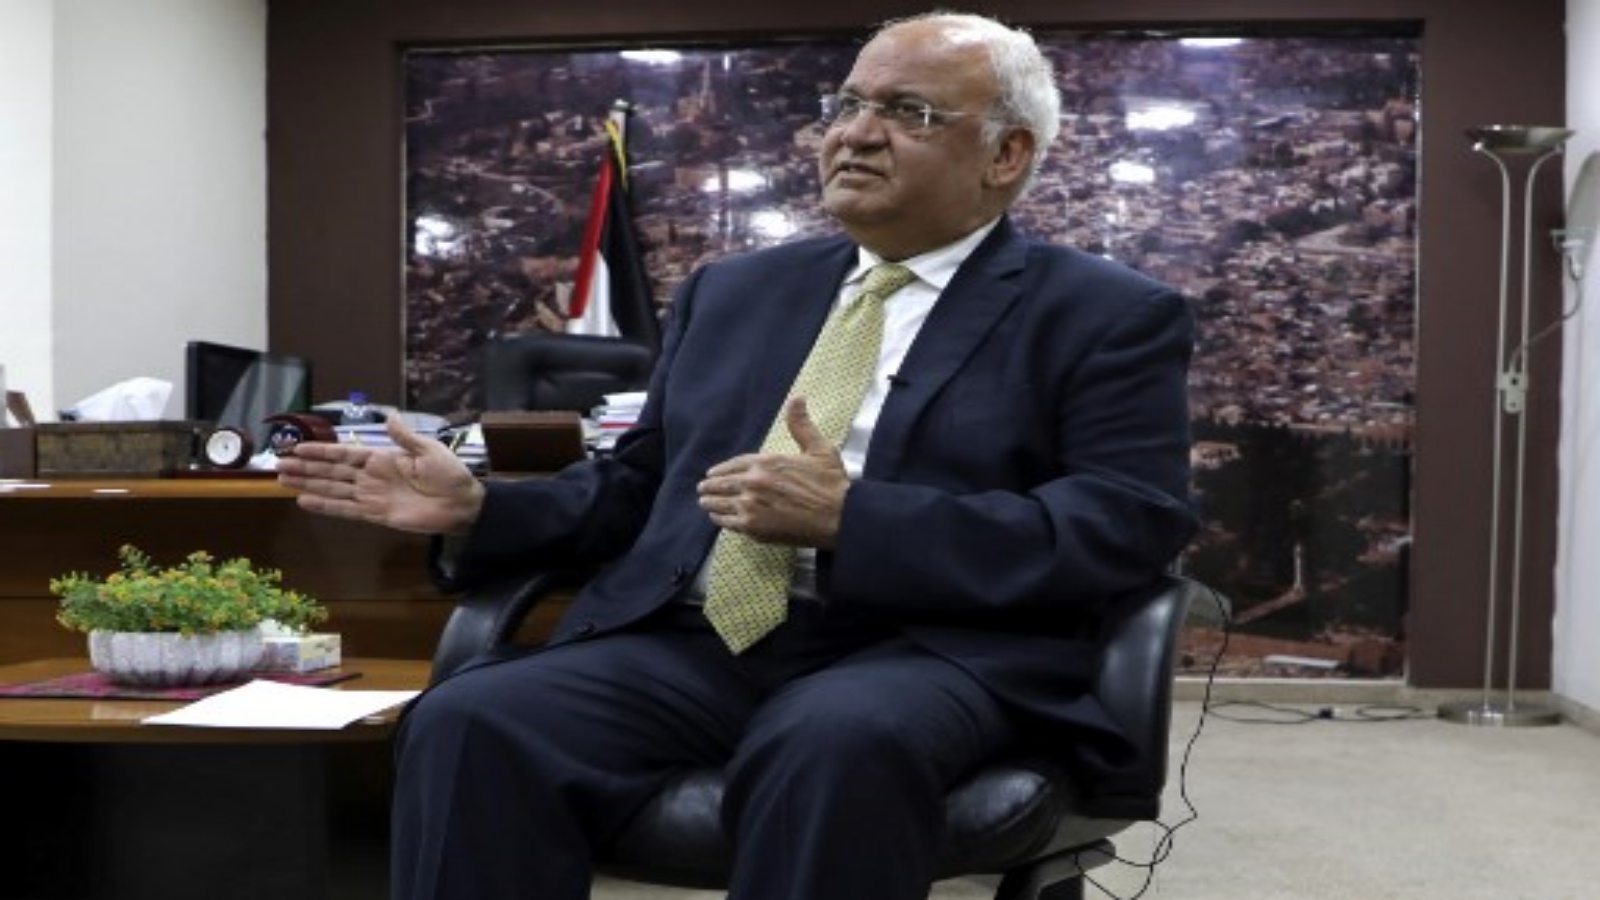  صورة التقطت في 3 مارس 2020 صائب عريقات ، الأمين العام لمنظمة التحرير الفلسطينية وكبير المفاوضين الفلسطينيين ، يتحدث إلى الصحفيين في مدينة رام الله بالضفة الغربية